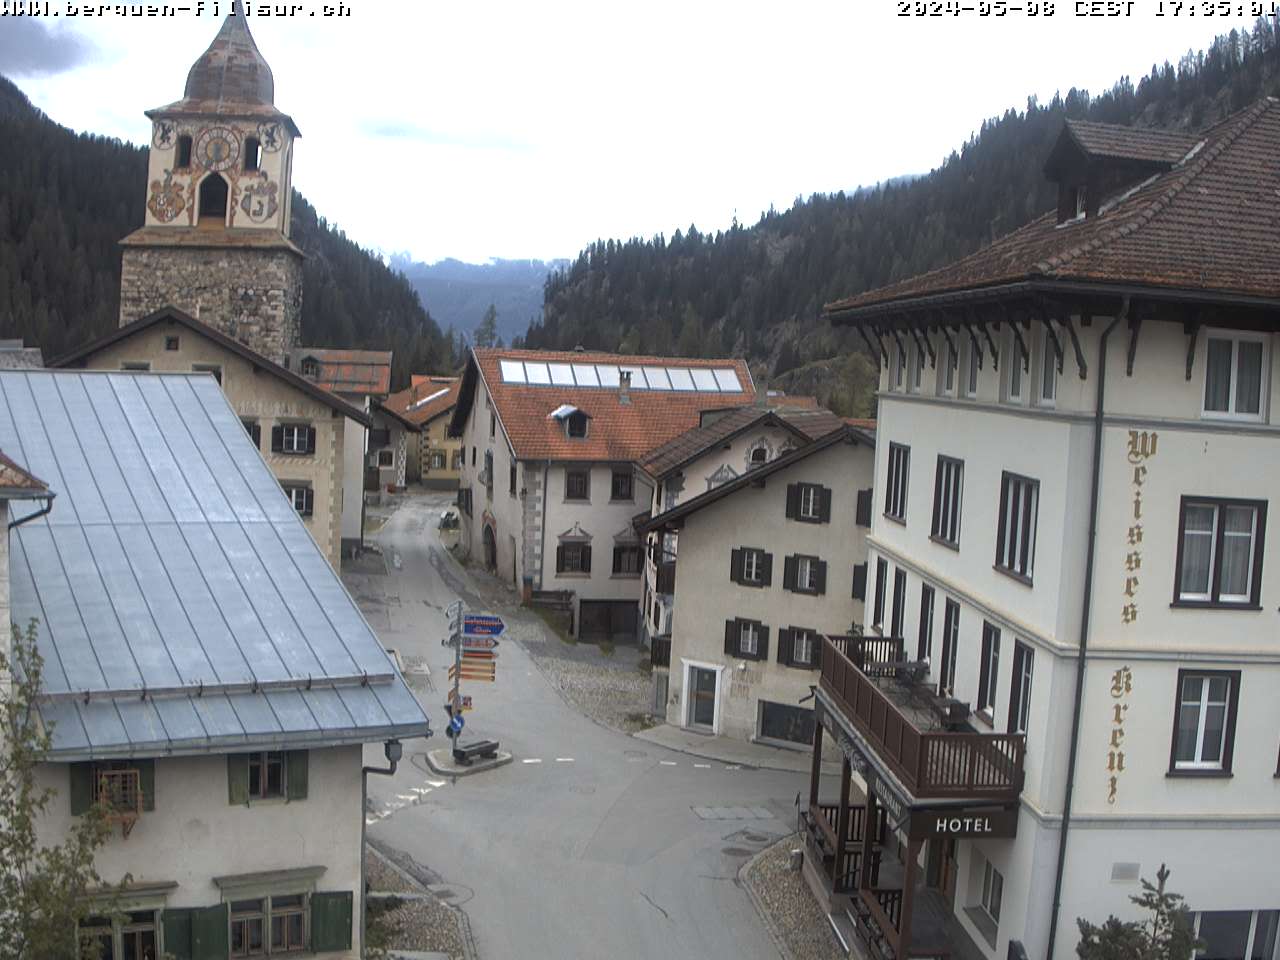 Webcam in Bergün